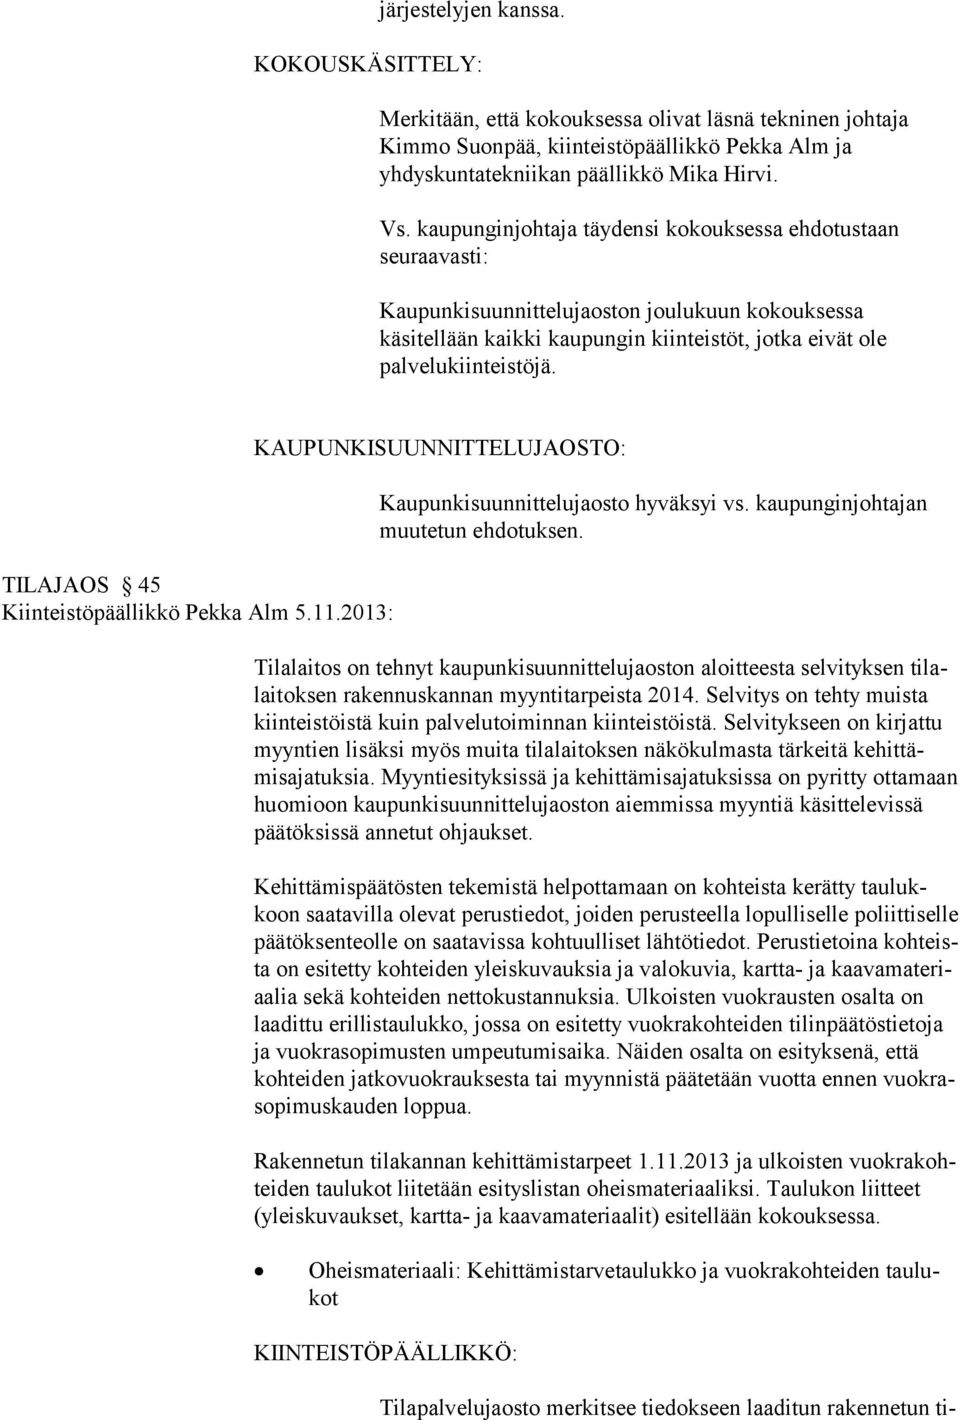 TILAJAOS 45 Kiinteistöpäällikkö Pekka Alm 5.11.2013: KAUPUNKISUUNNITTELUJAOSTO: Kaupunkisuunnittelujaosto hyväksyi vs. kaupunginjohtajan muutetun ehdotuksen.